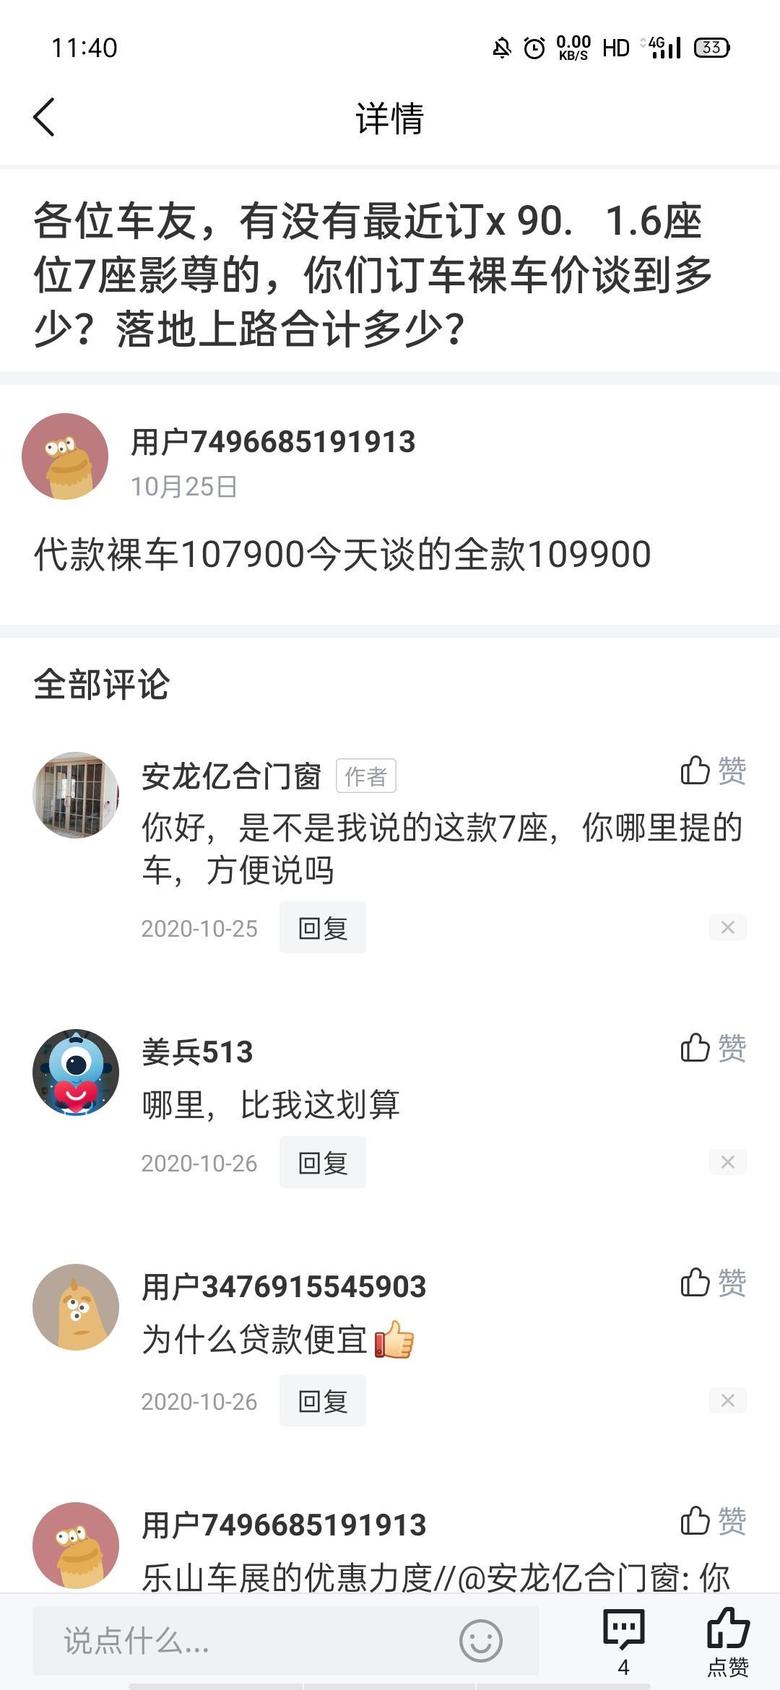 捷途x90我也想定台X90，广东哪里便宜点呢？